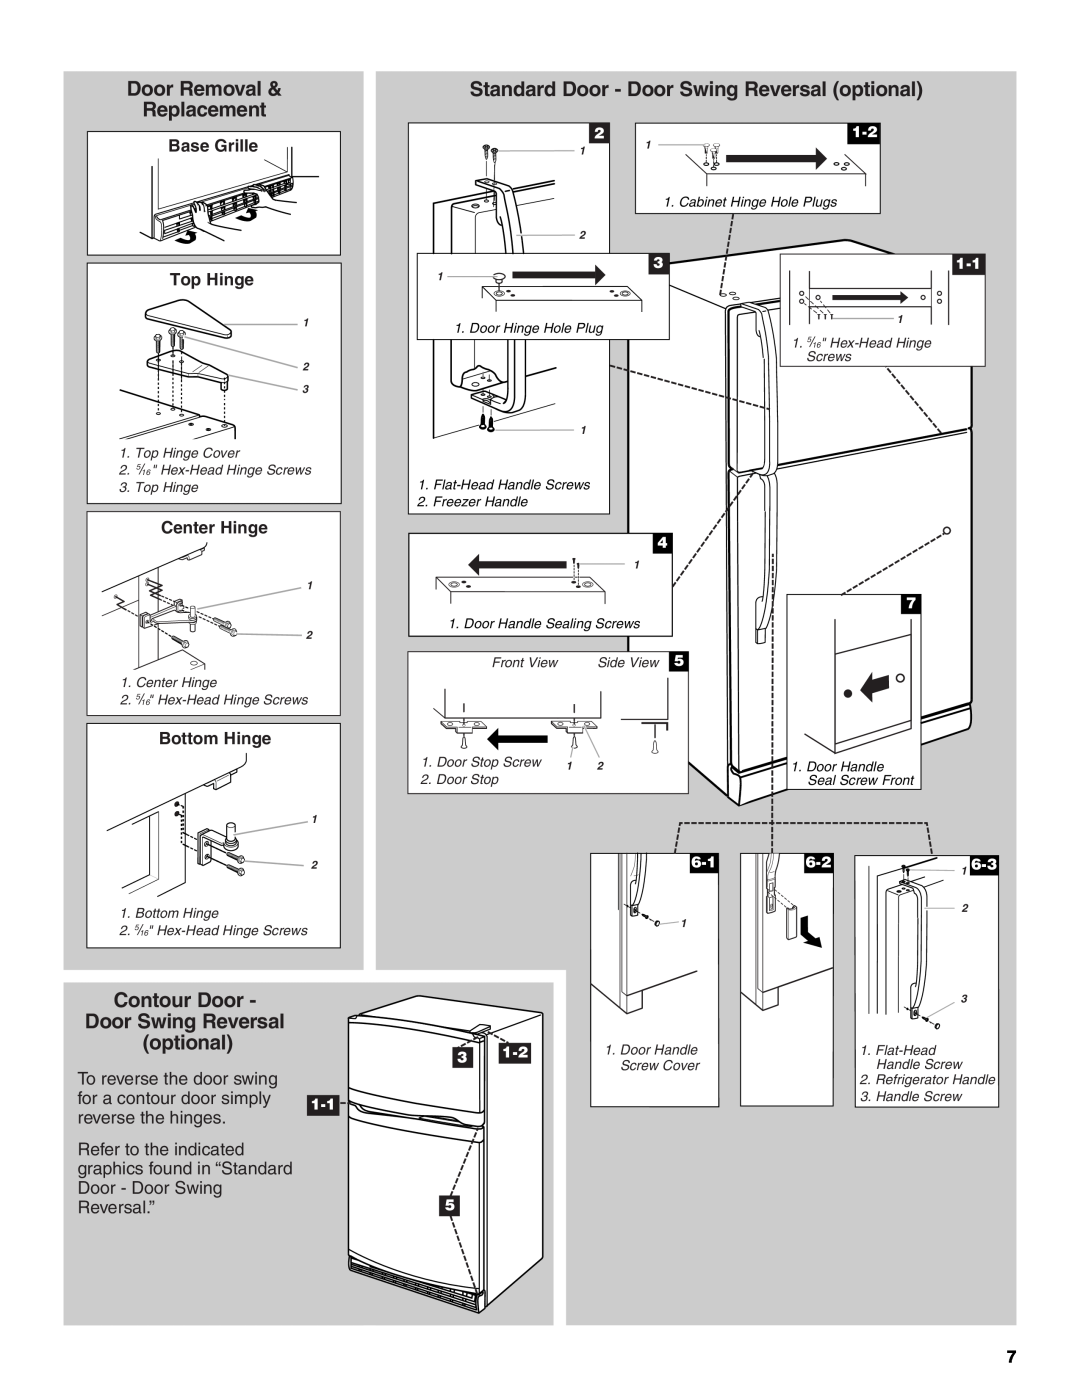 Whirlpool GR2SHTXKB01 Door Removal, Standard Door - Door Swing Reversal optional, Replacement, Contour Door, Top Hinge 